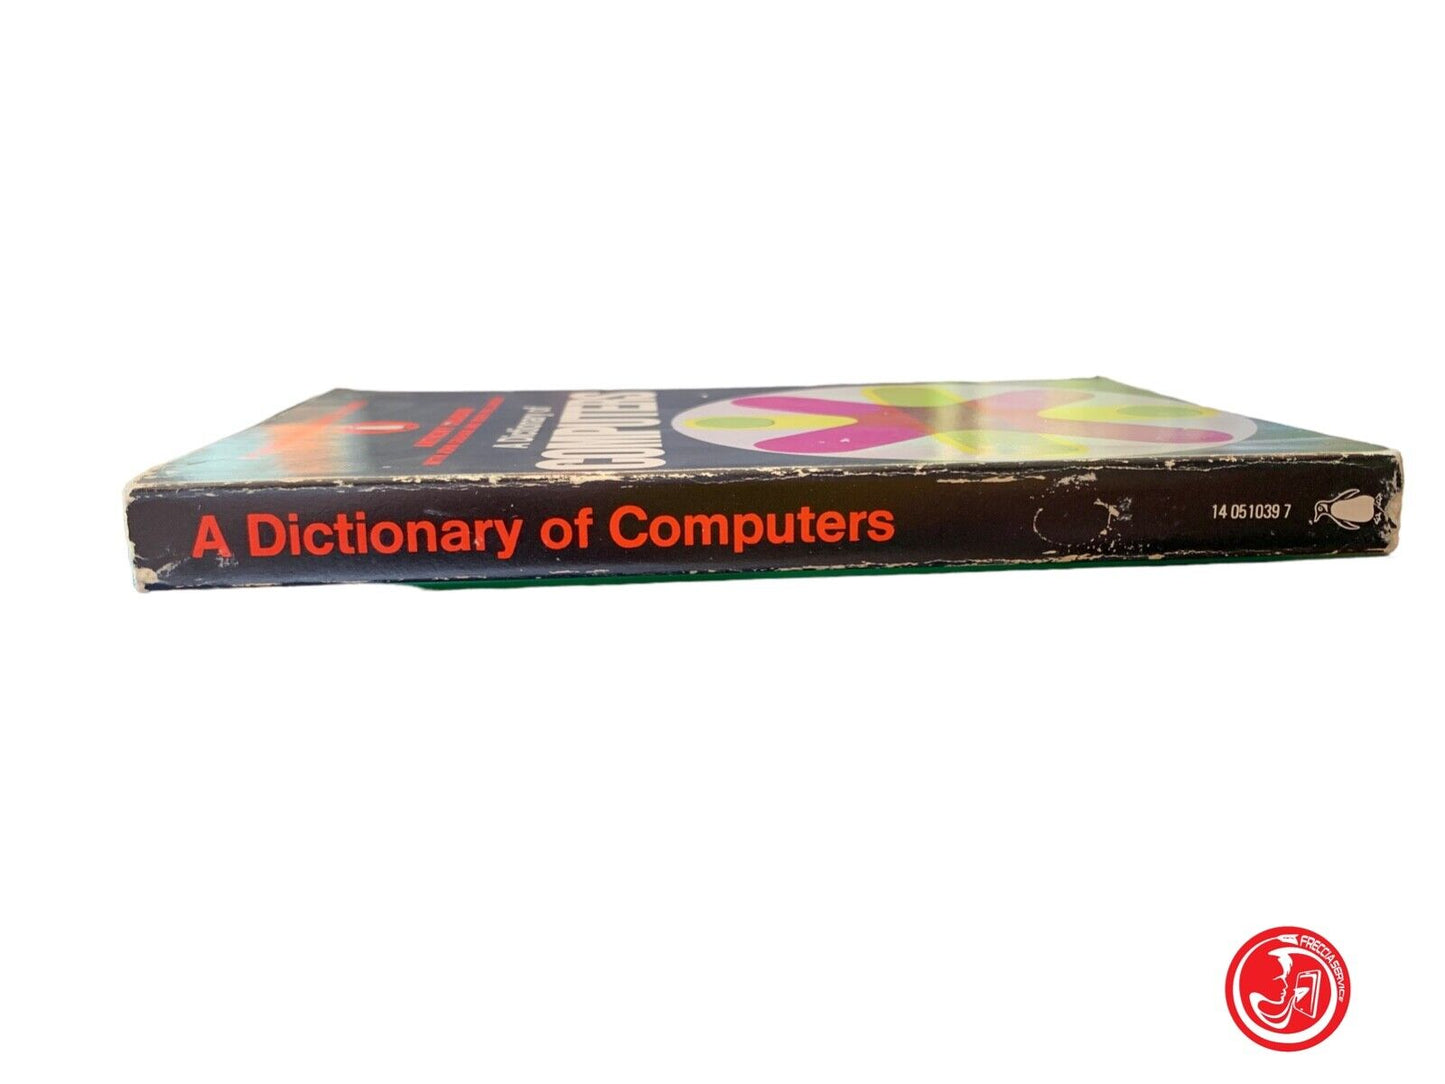 Un dictionnaire des ordinateurs - Anthony Chandor - Penguin Books 1970